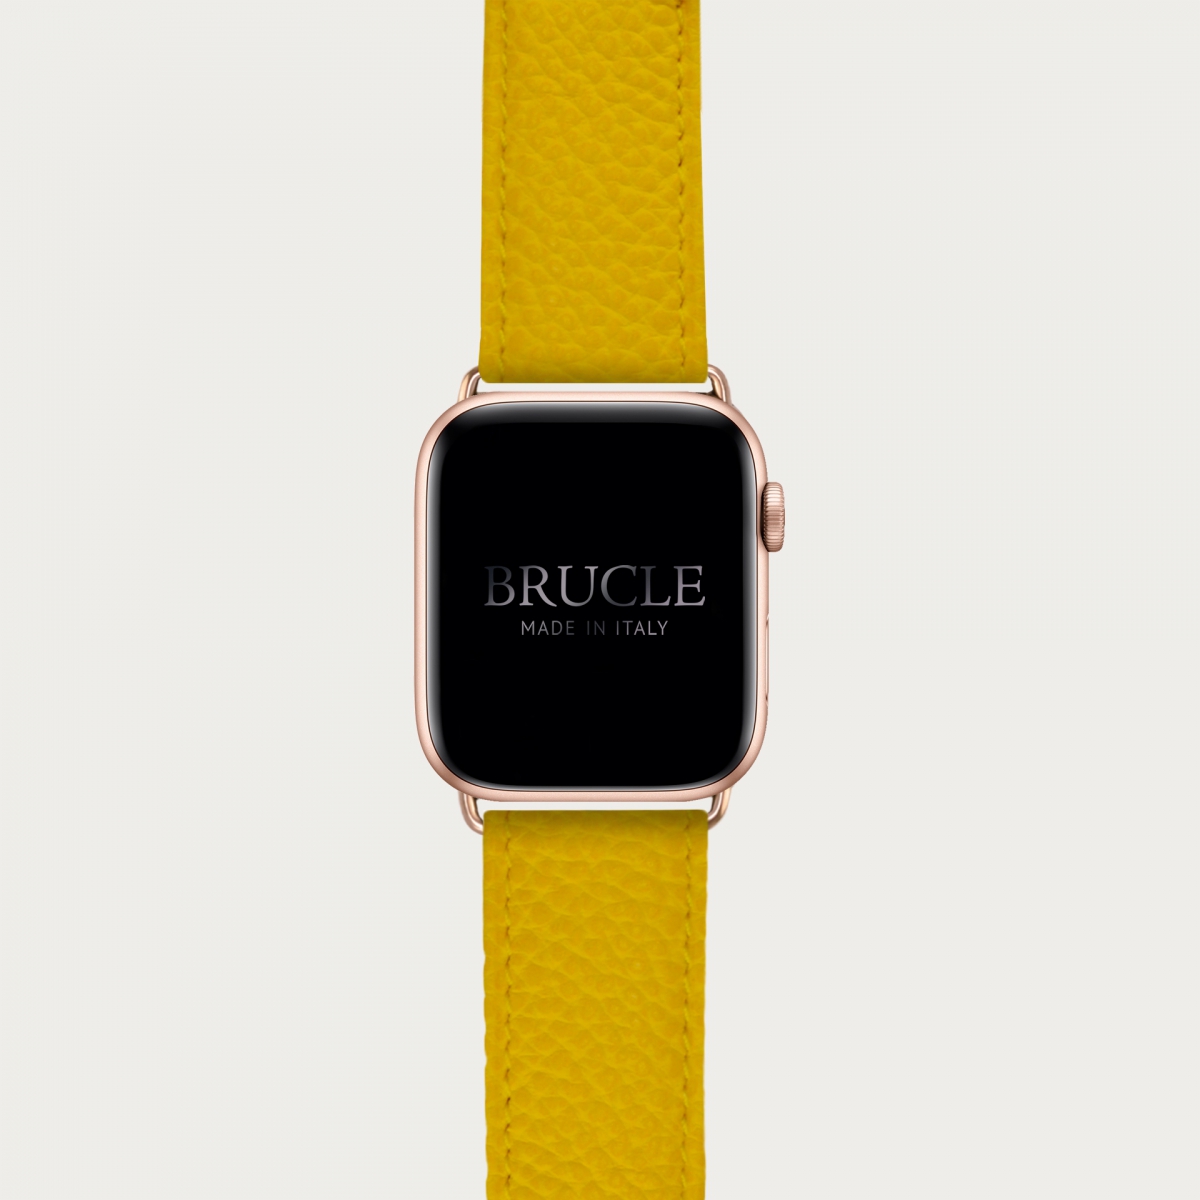 Armband kompatibel mit Apple Watch / Samsung Smartwatch, Gelb, leder mit Saffiano-print